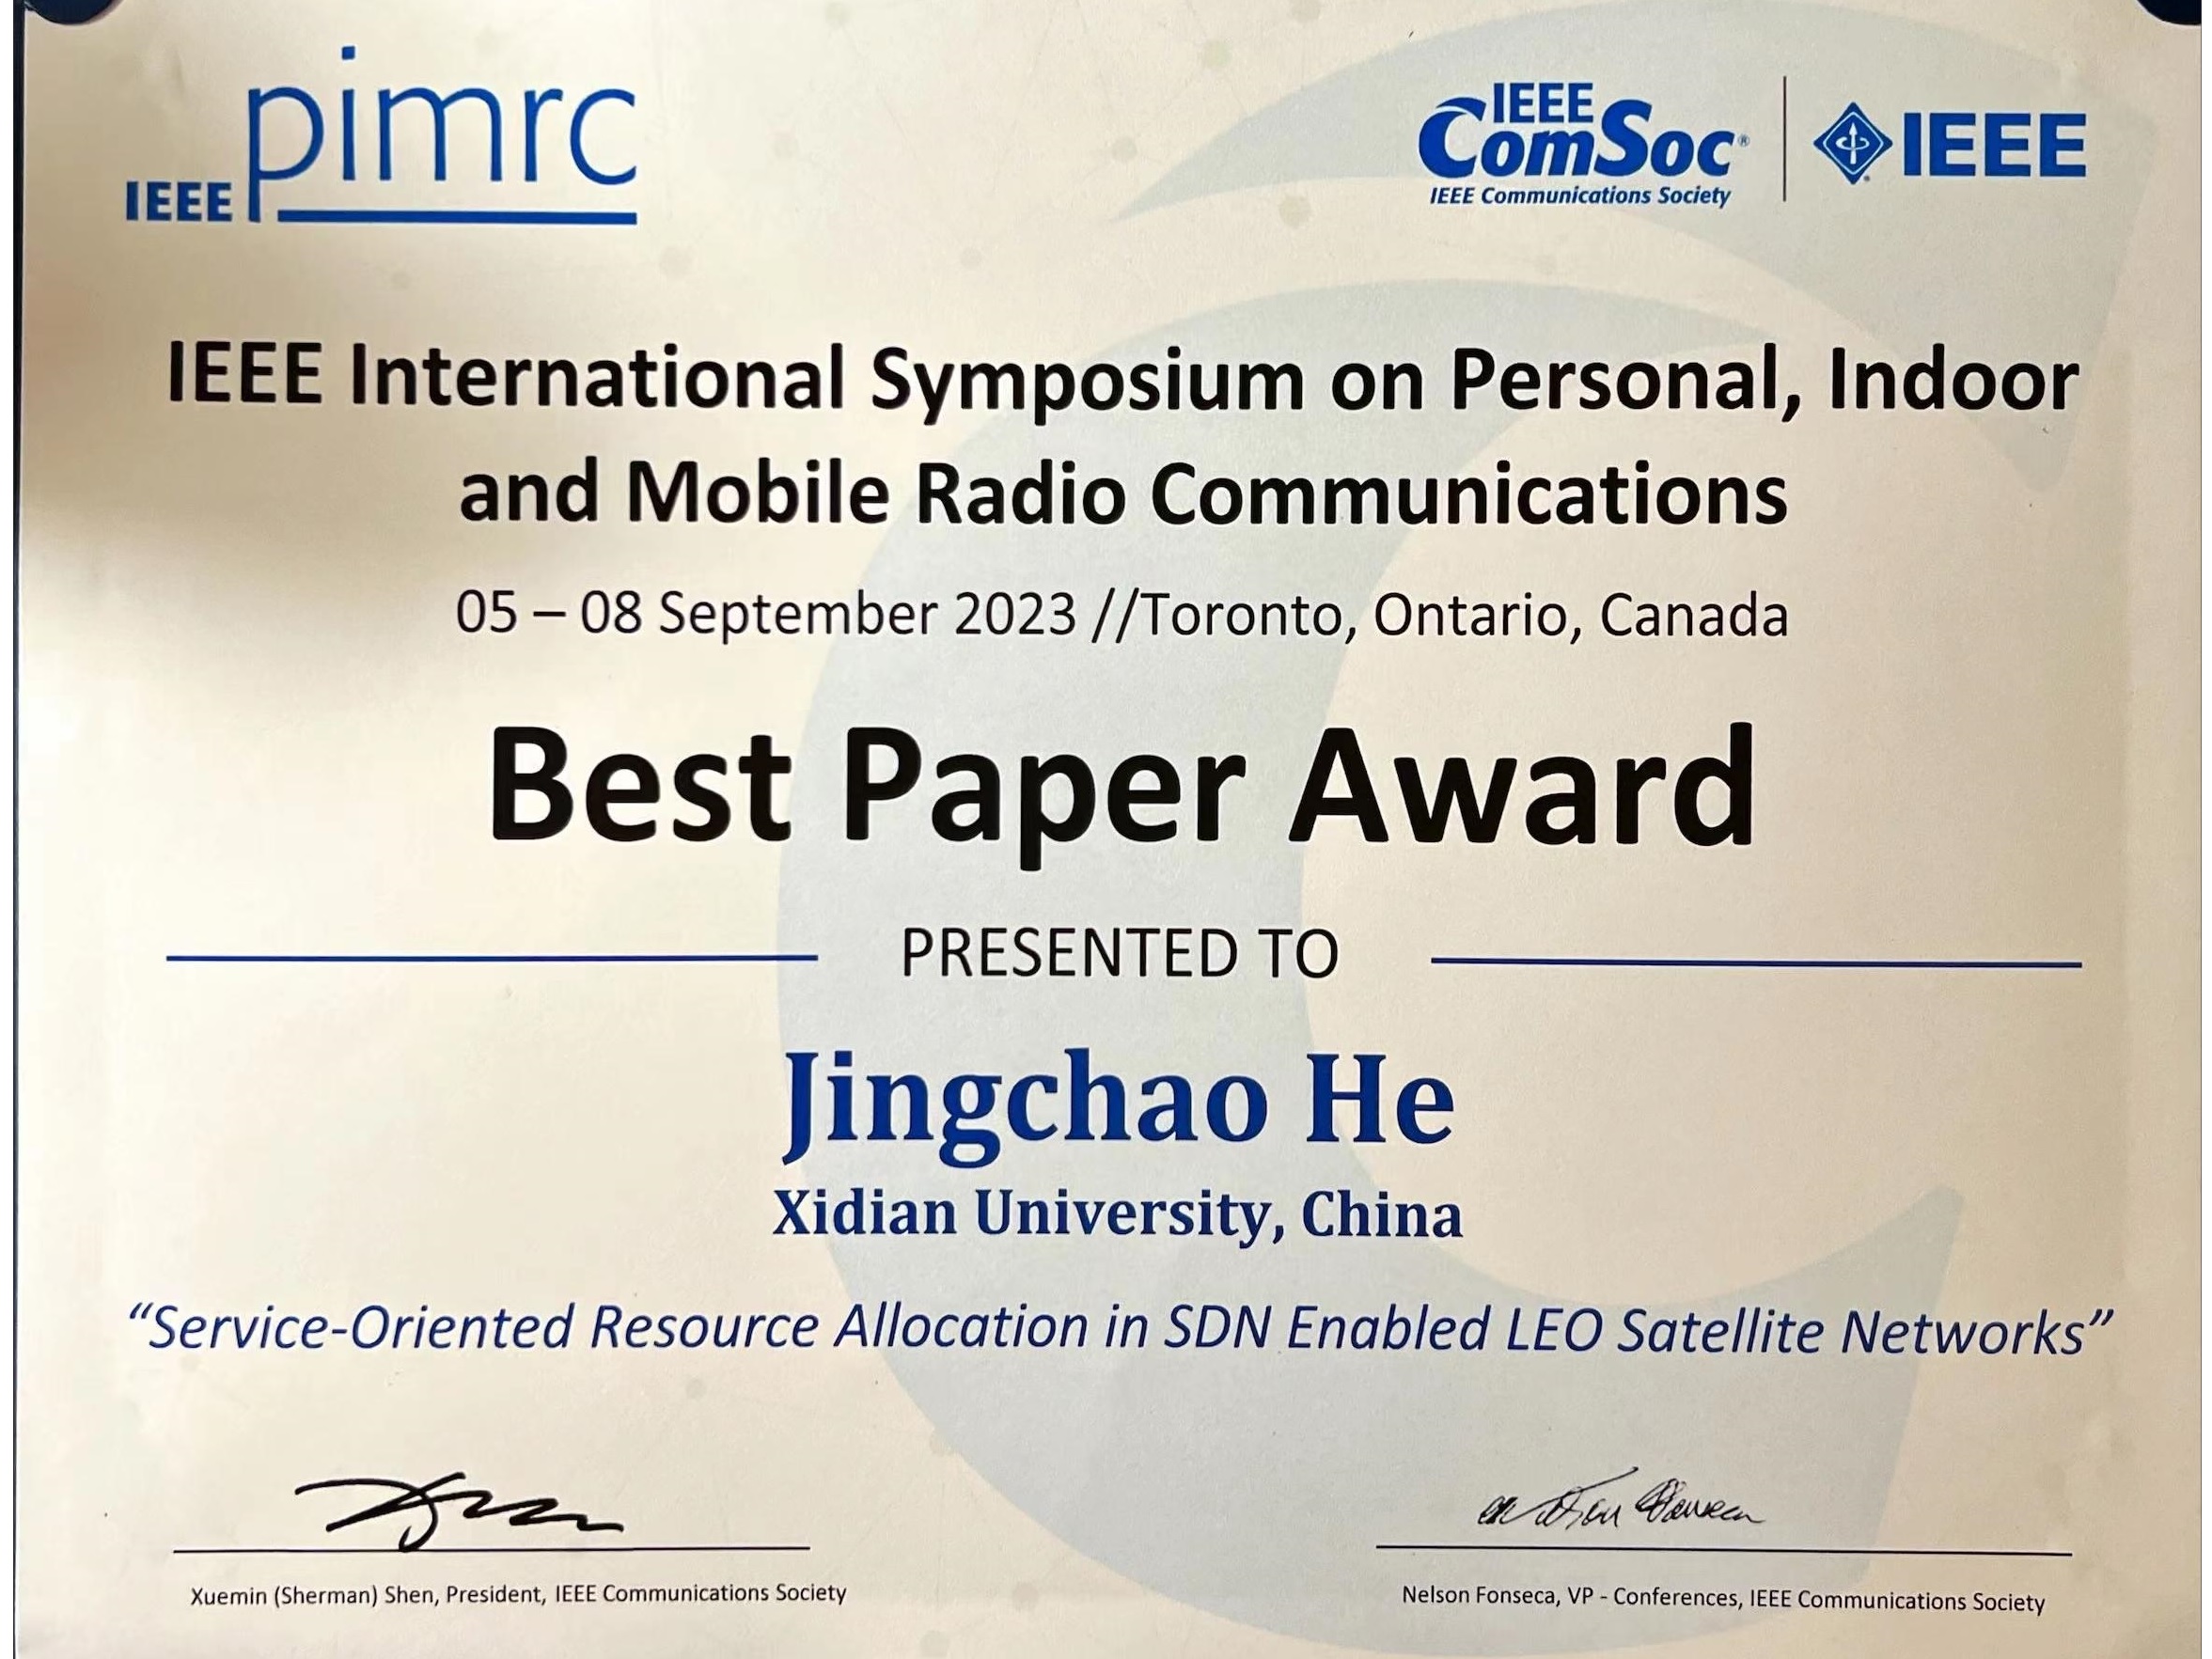 祝贺贺靖超同学论文荣获IEEE PIMRC 2023 最佳论文奖